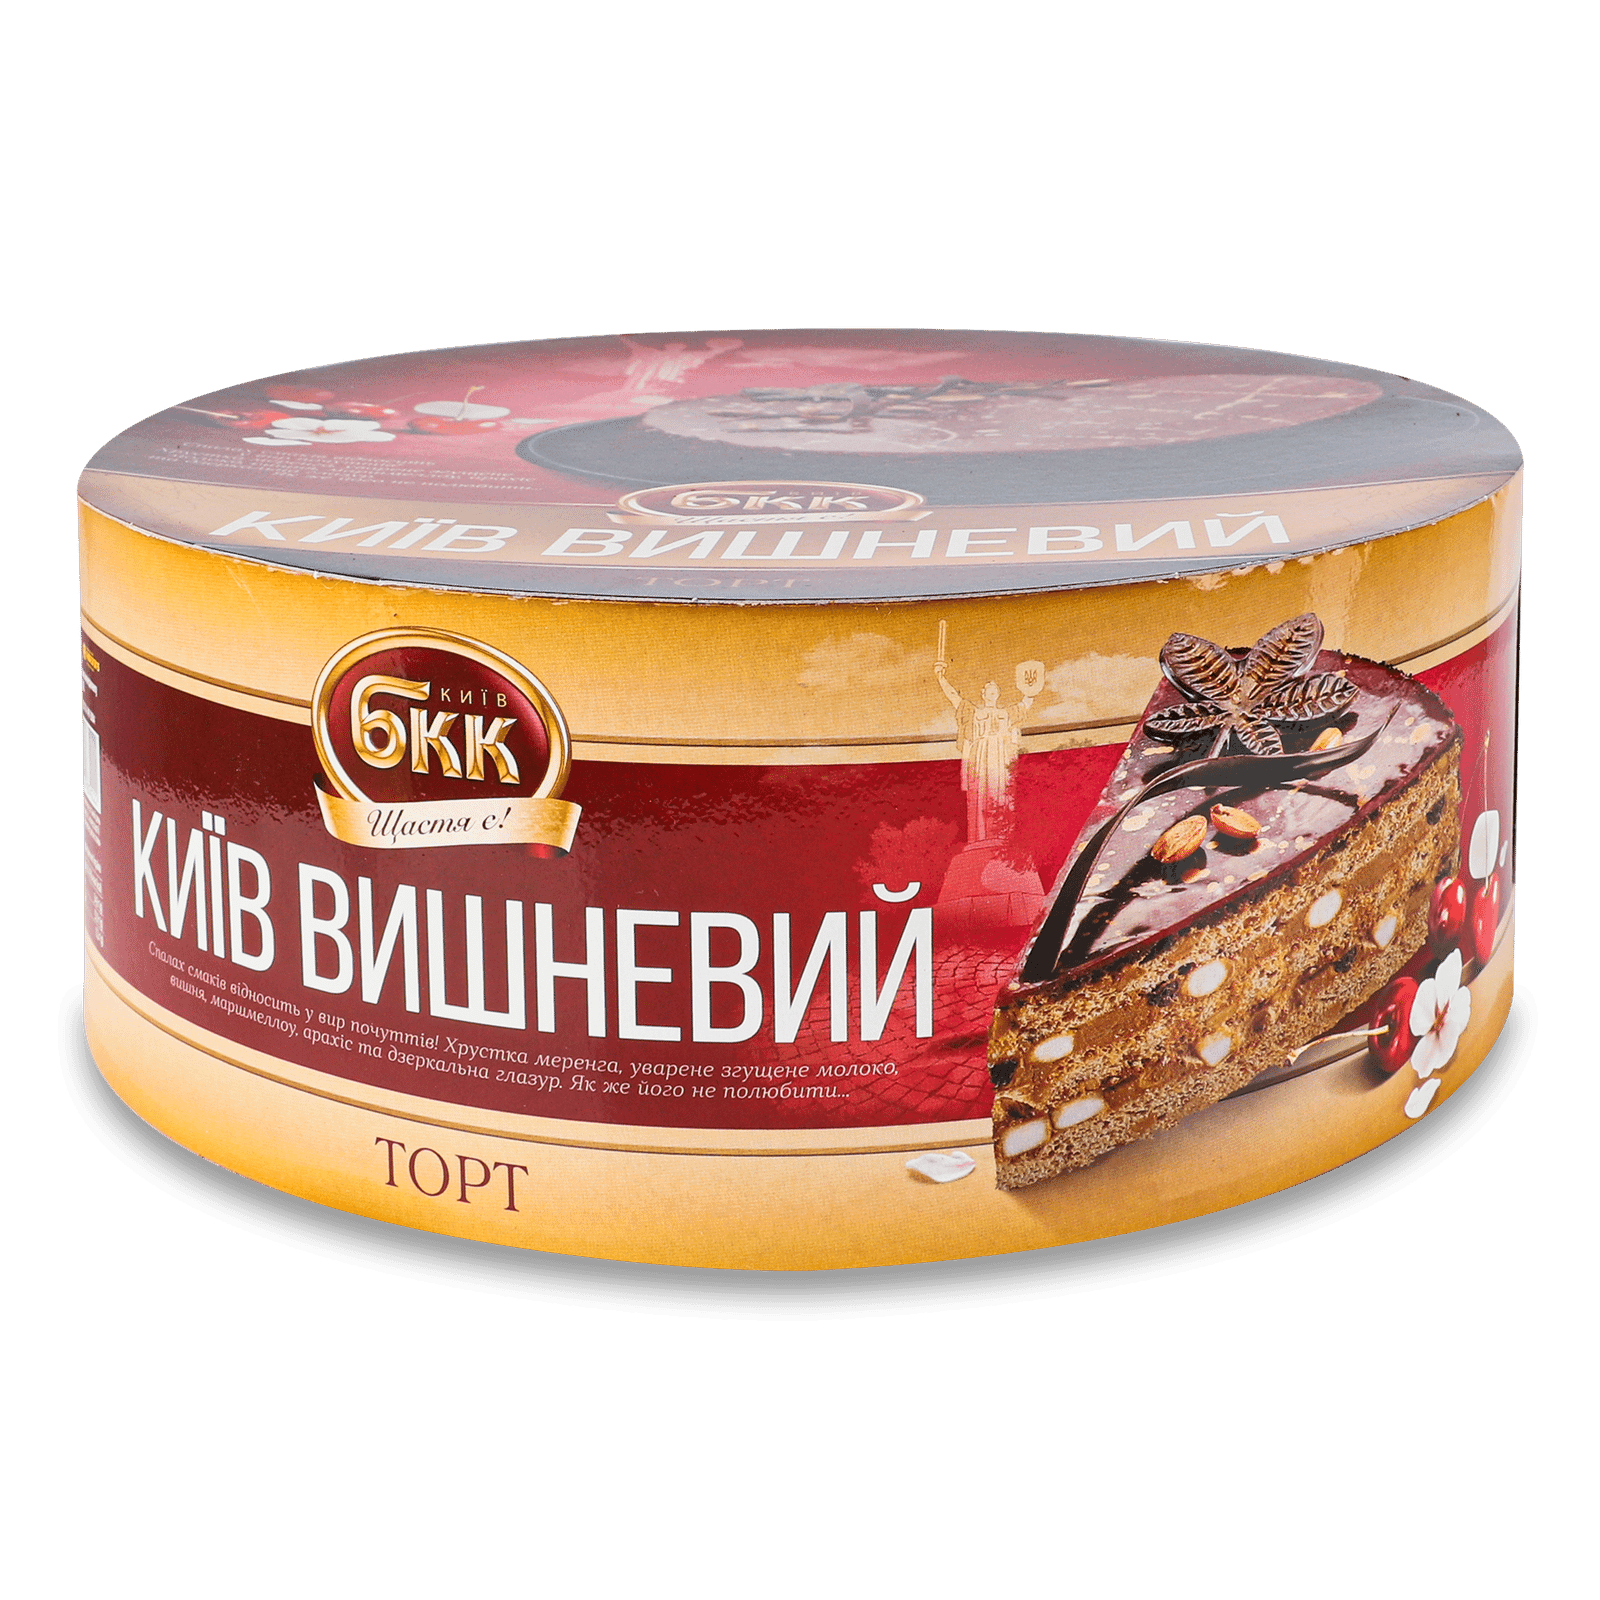 Торт БКК Київ вишневий - 1